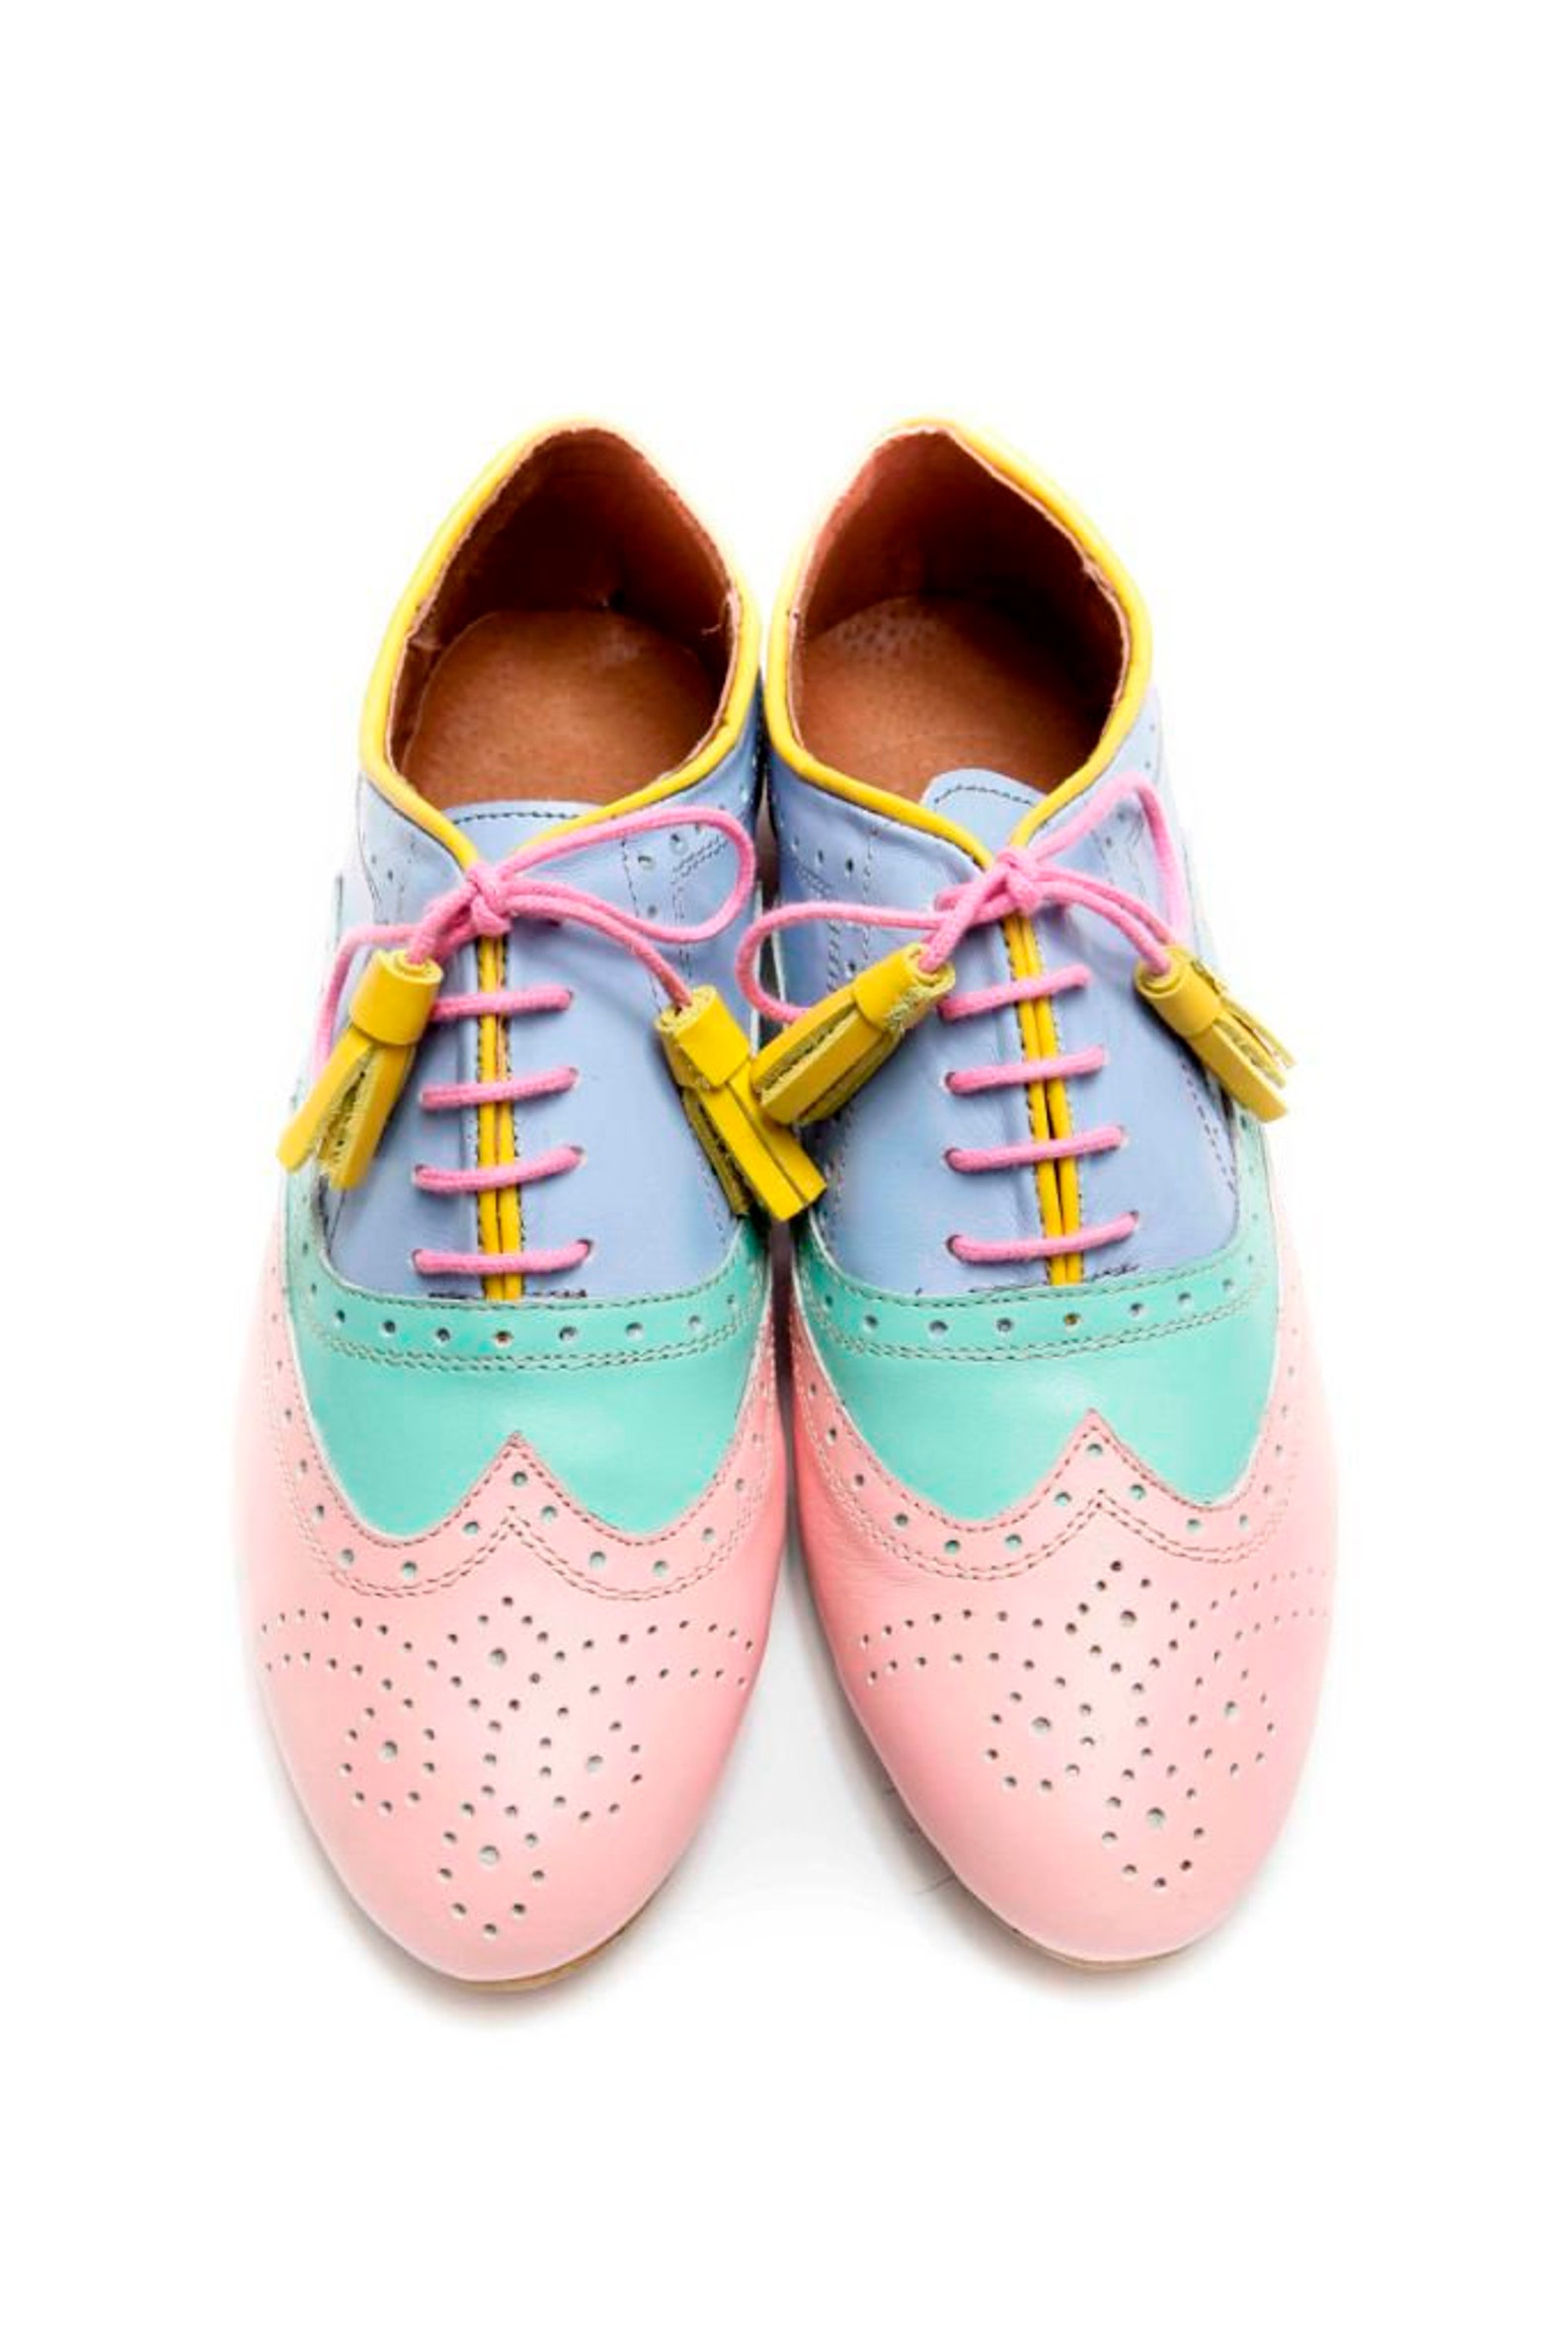 women's oxford shoes, ballet flats, leather ballet flats, handmade women's flats, pink shoes, mint shoes, blue shoes, ba